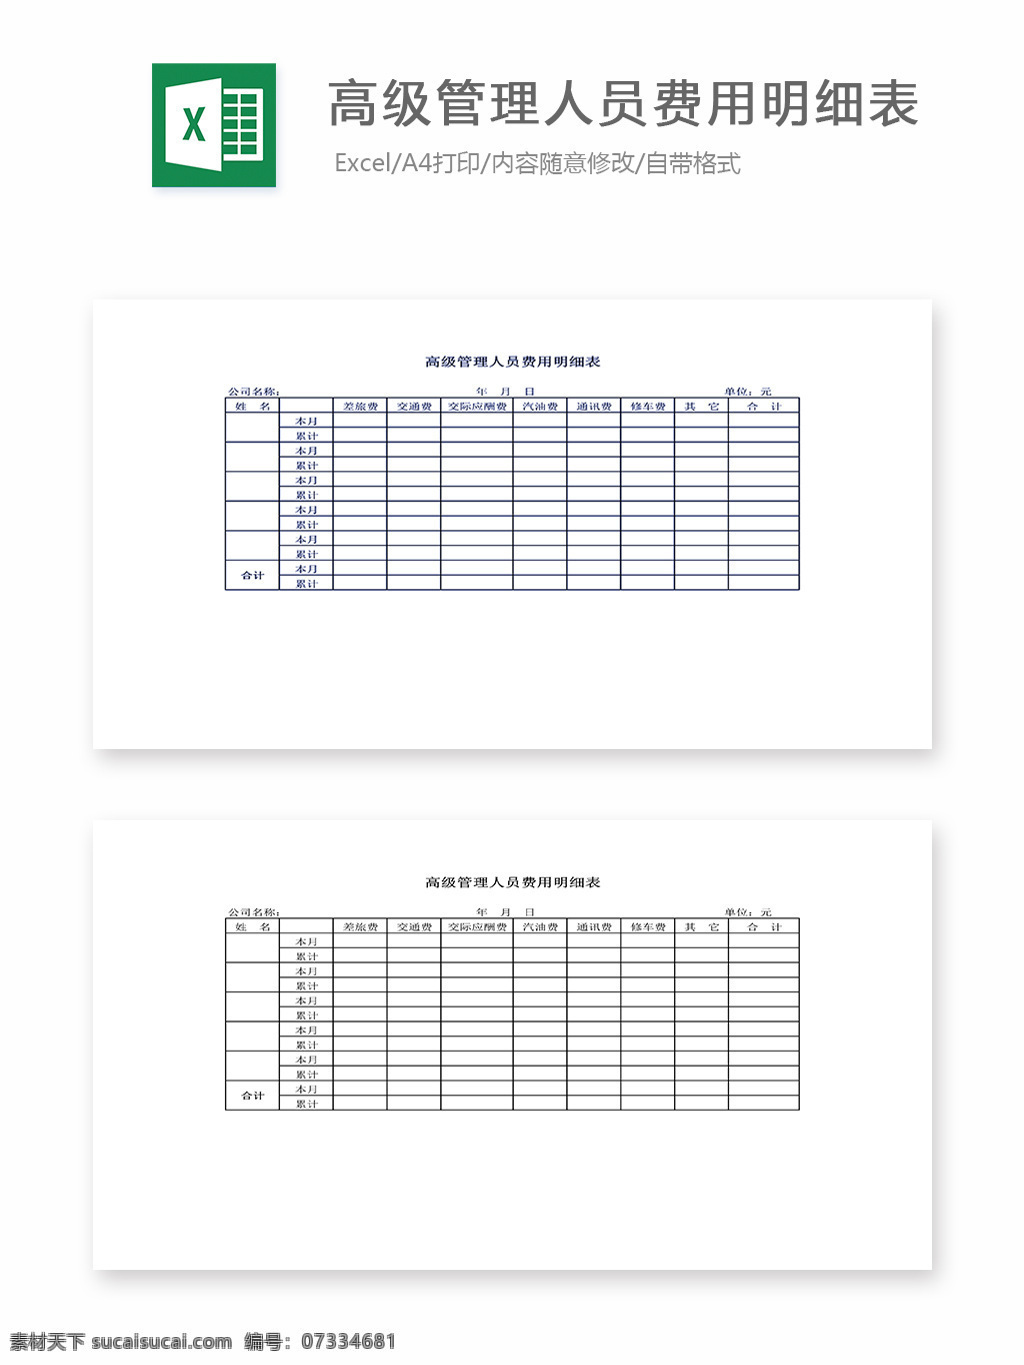 高级 管理 人员 费用 明细表 表格 表格模板 表格设计 图表 管理人员